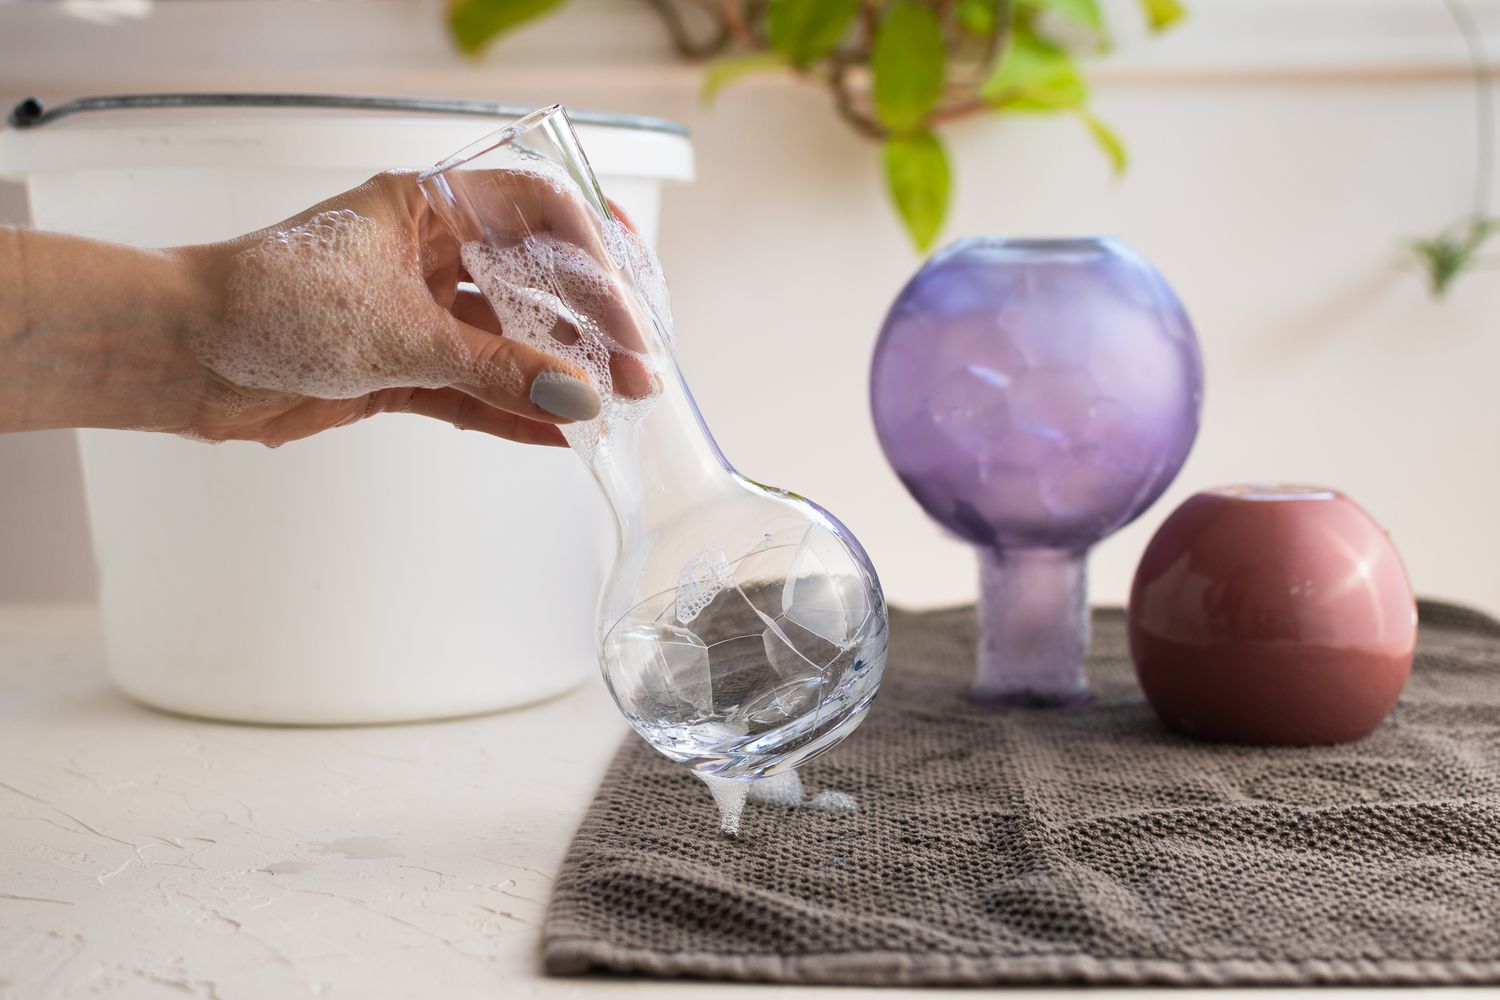 Vaso de vidro alto limpo com água e sabão e colocado em um pano marrom